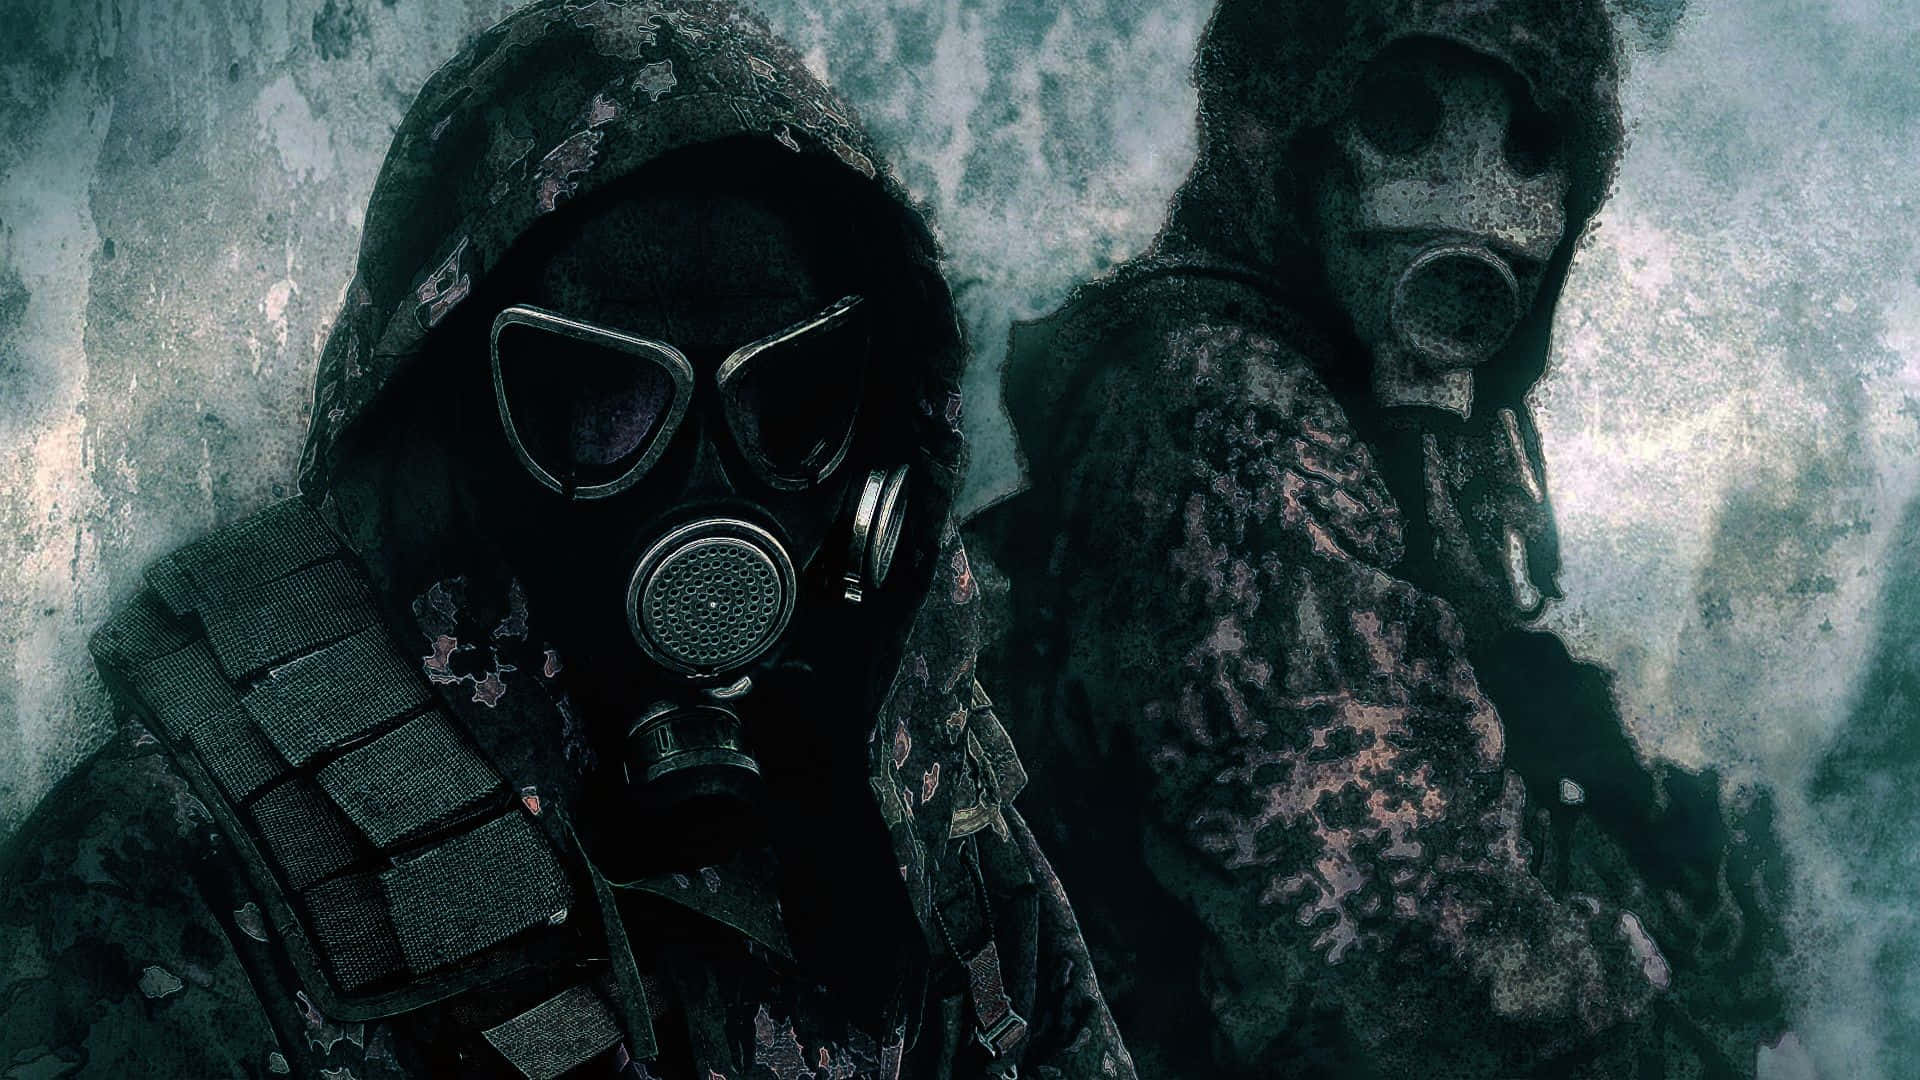 Soldiersin Gas Masks Dark Backdrop.jpg Wallpaper